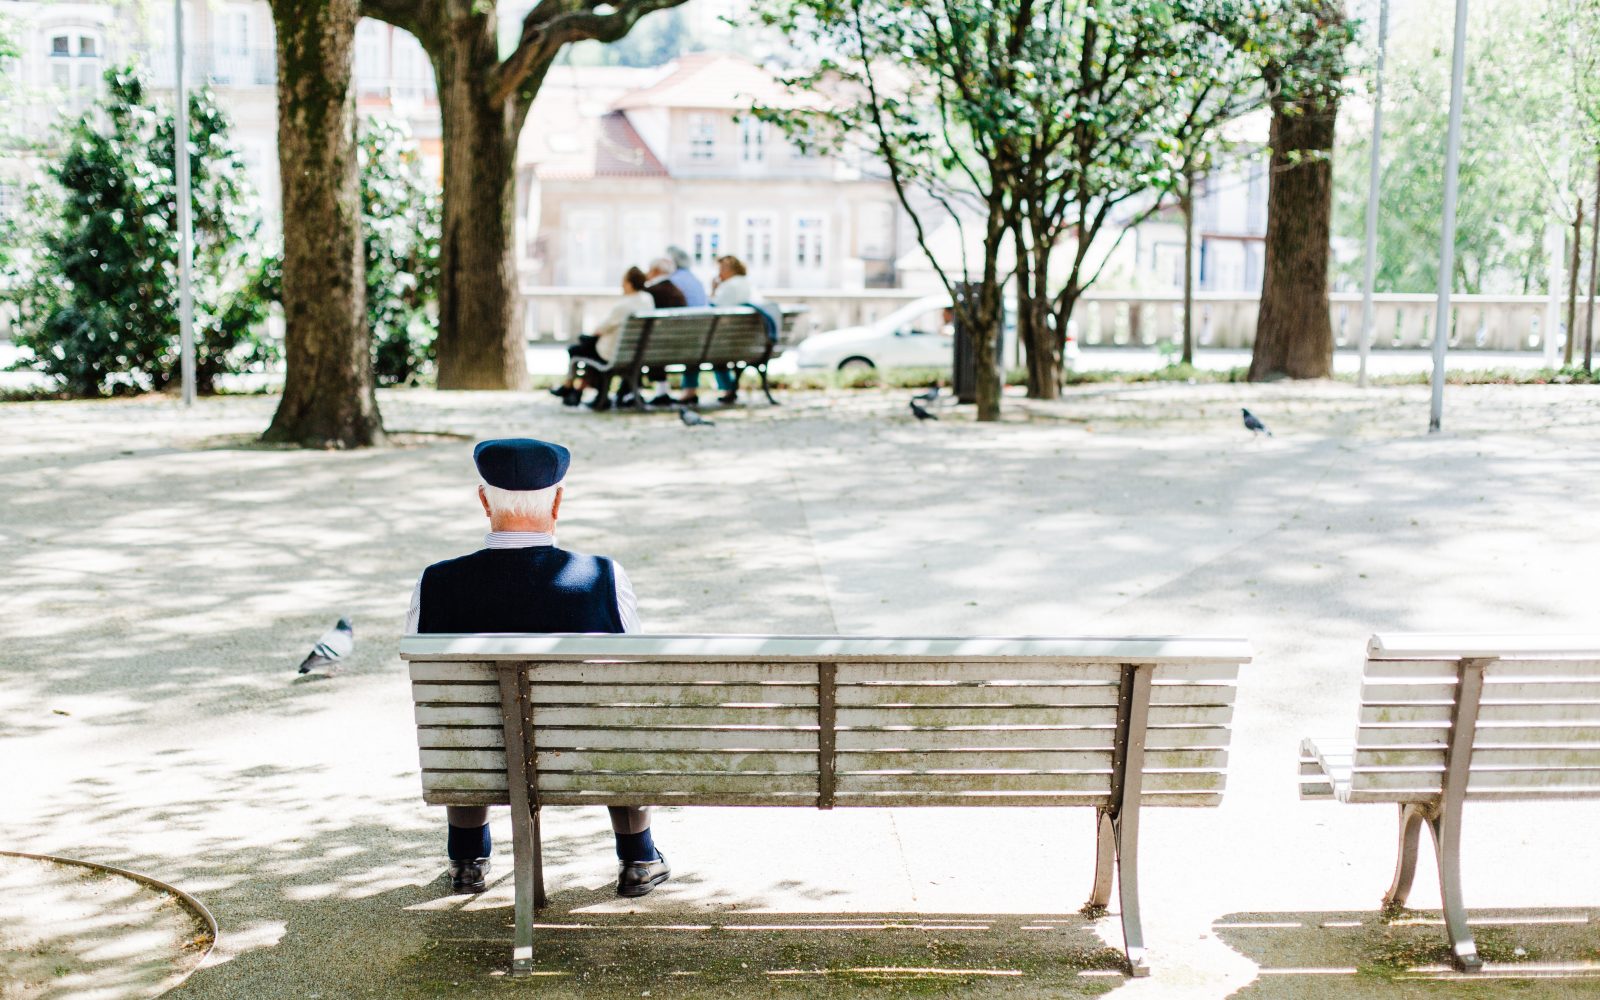 Starostnik sedi na klopci v parku